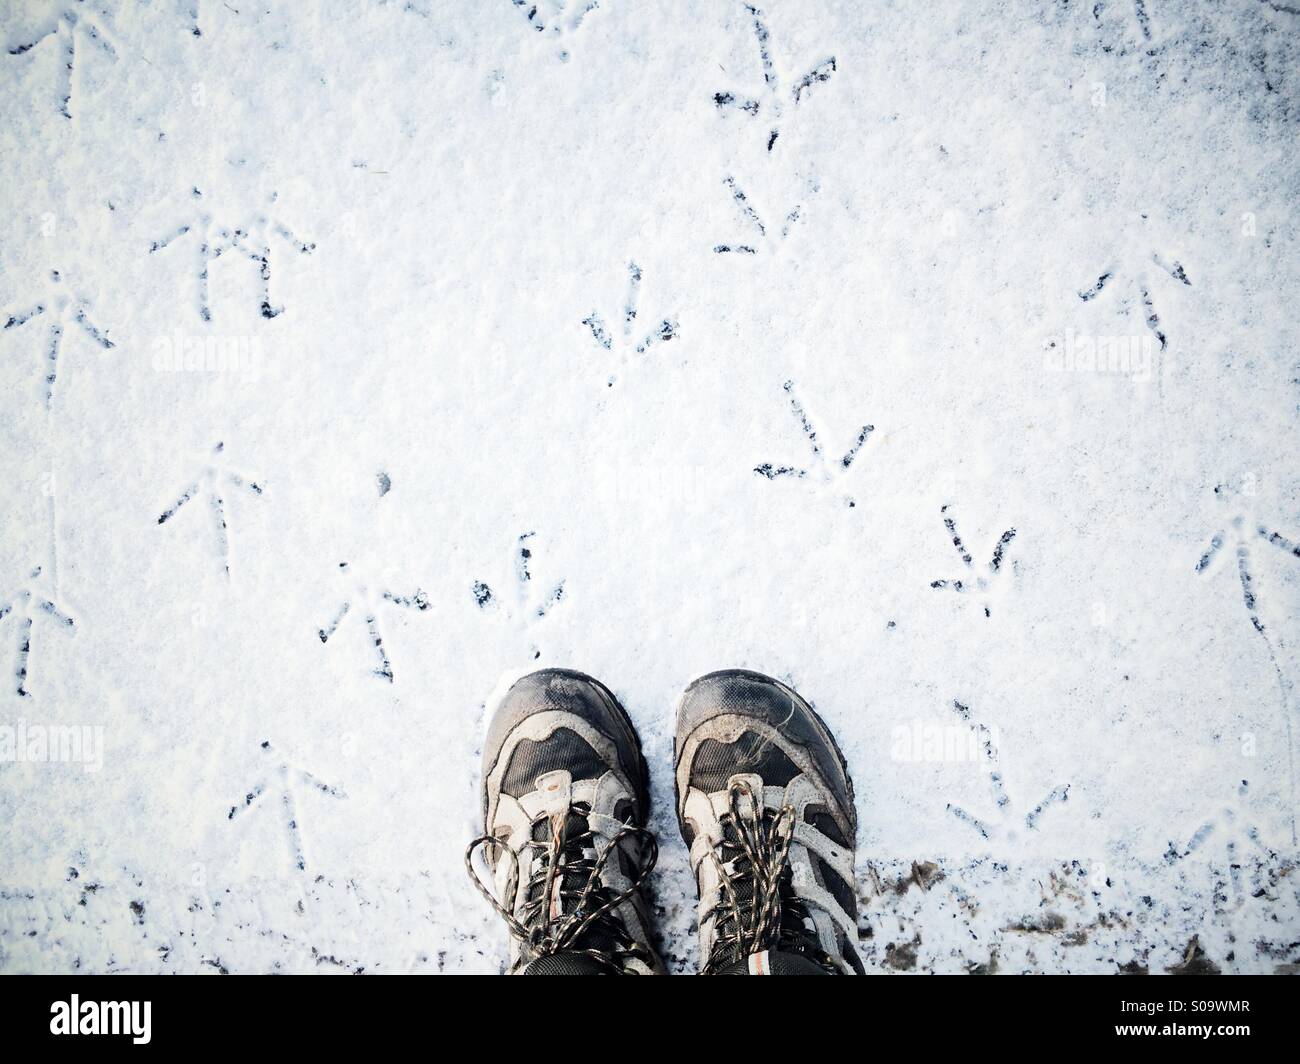 Mirando botas para caminar en la nieve con el faisán pistas en todas direcciones. Foto de stock